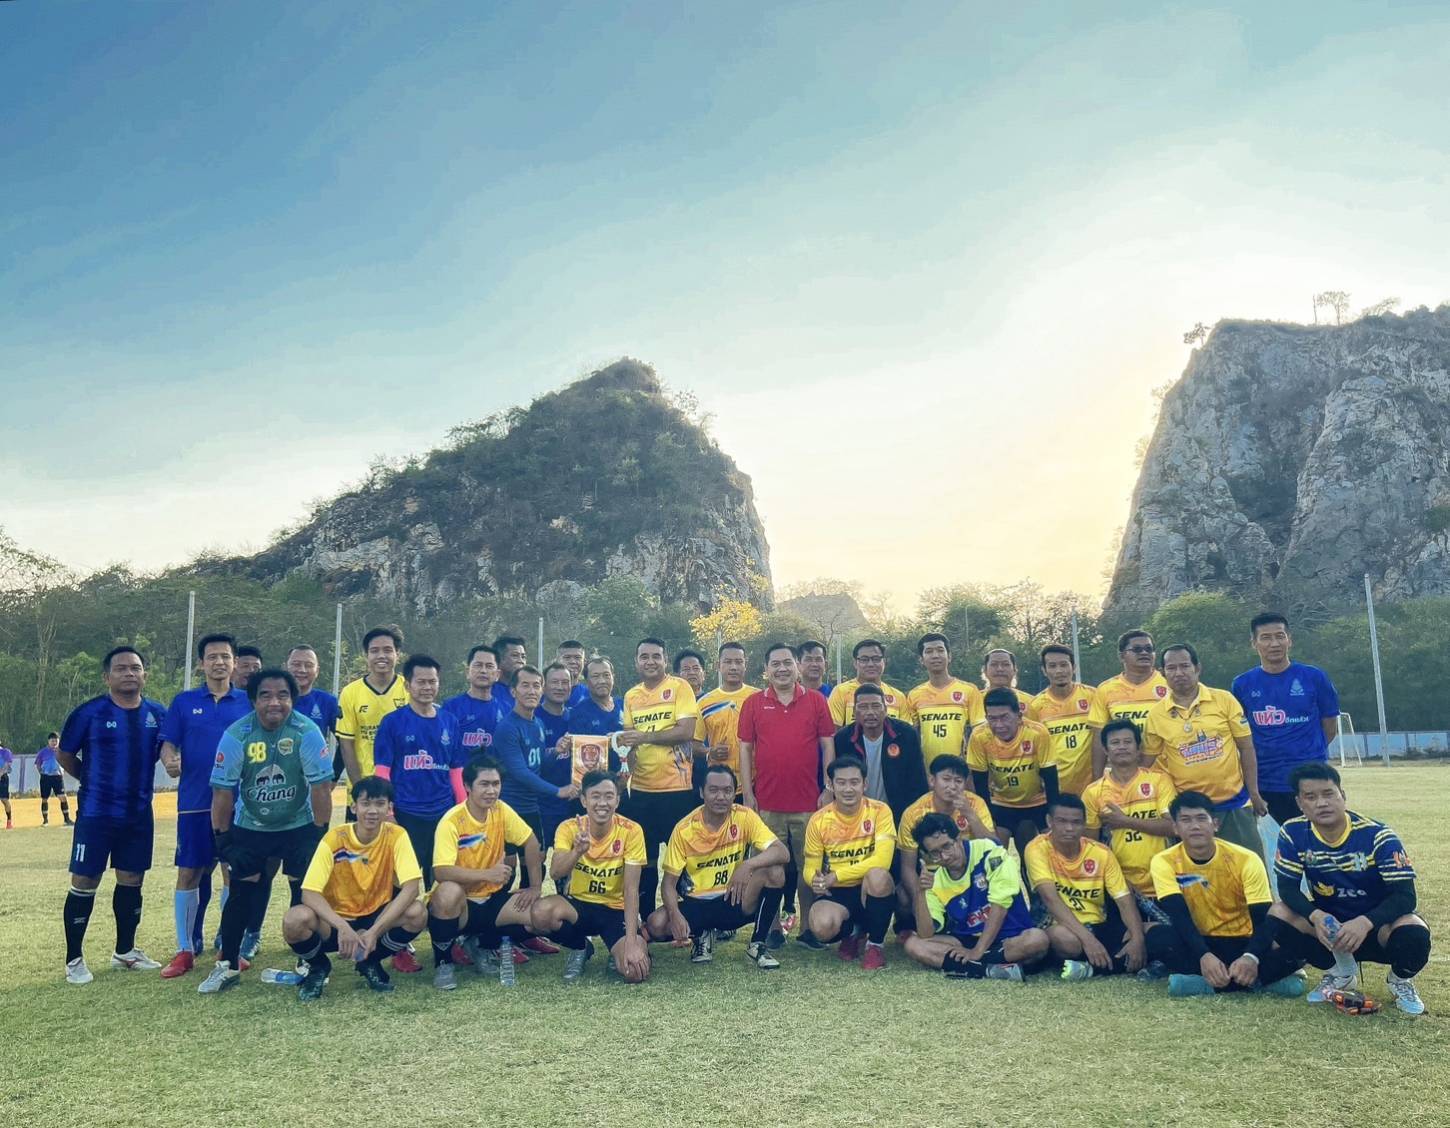 ชมรมฟุตบอลสำนักงานเลขาธิการวุฒิสภา ร่วมกับคณะทำงานสุขภาพและออกกำลังกาย เข้าร่วมการแข่งขันฟุตบอลนัดกระชับมิตรกับทีมดาวน้ำเงิน ปี 27 ศิษย์เก่าเบญจมราชูทิศ ราชบุรี